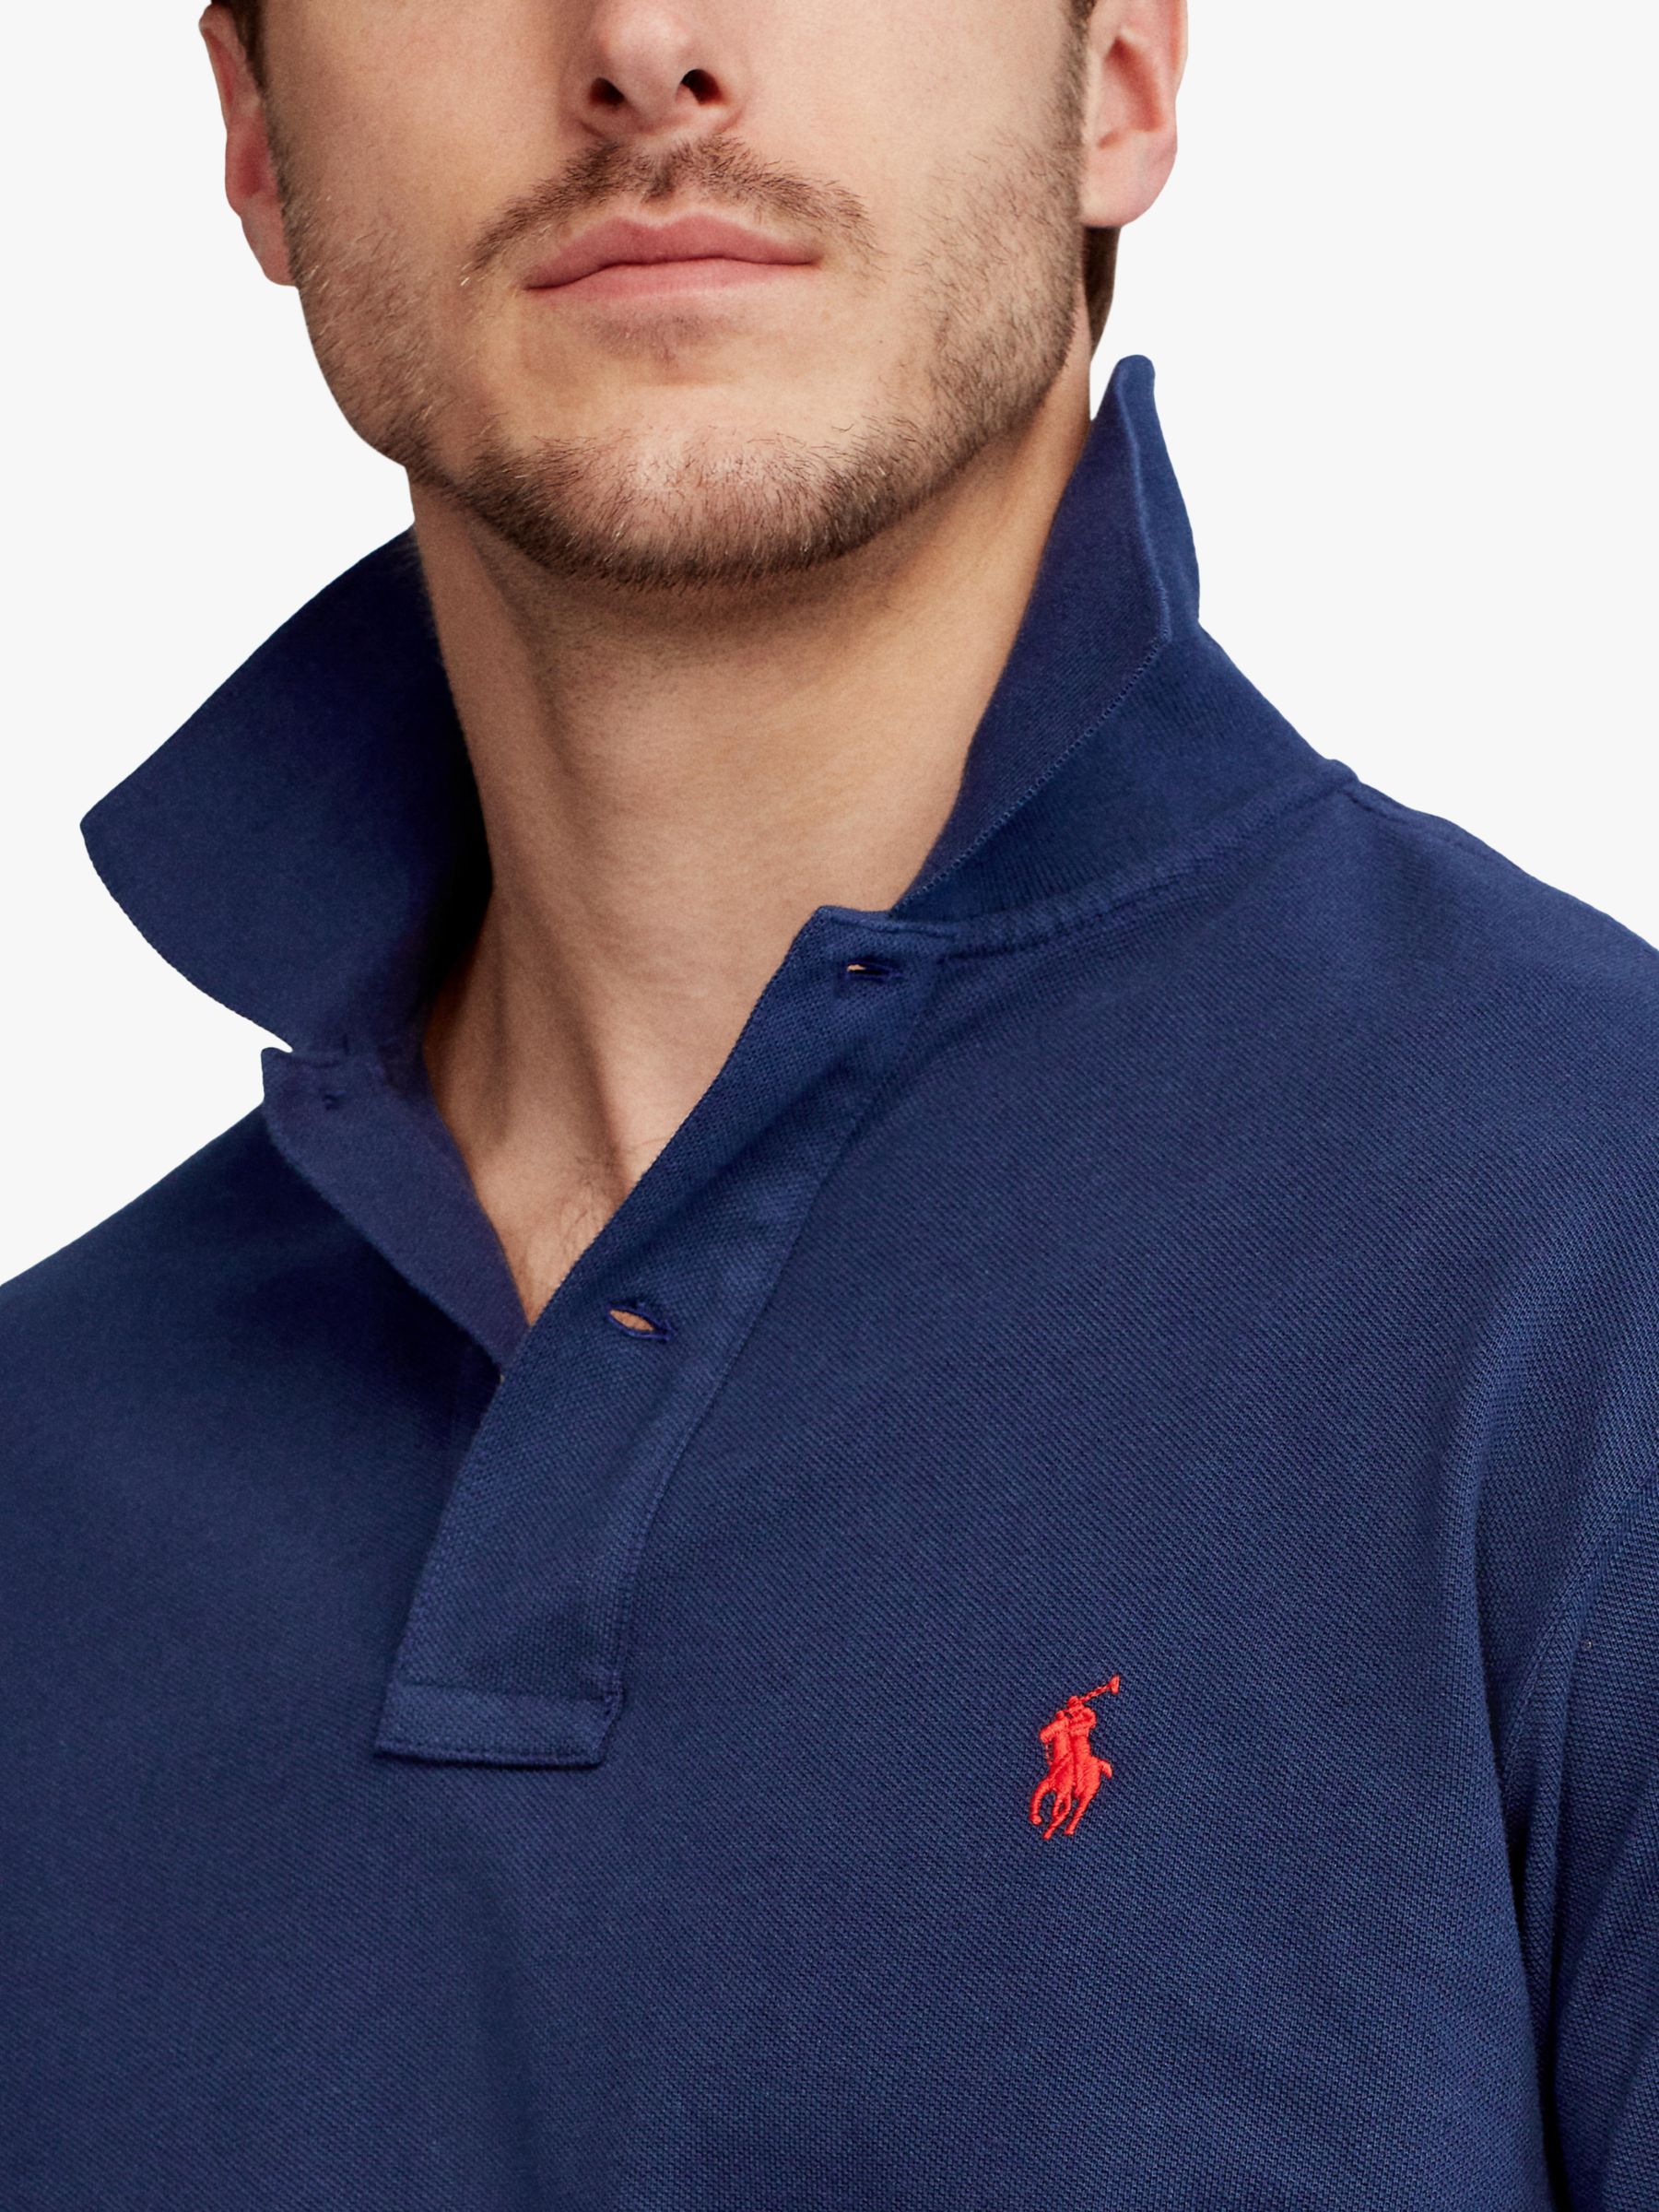 Polo Ralph Lauren Big & Tall Regular Fit Polo Shirt, Newport Navy, 1XB